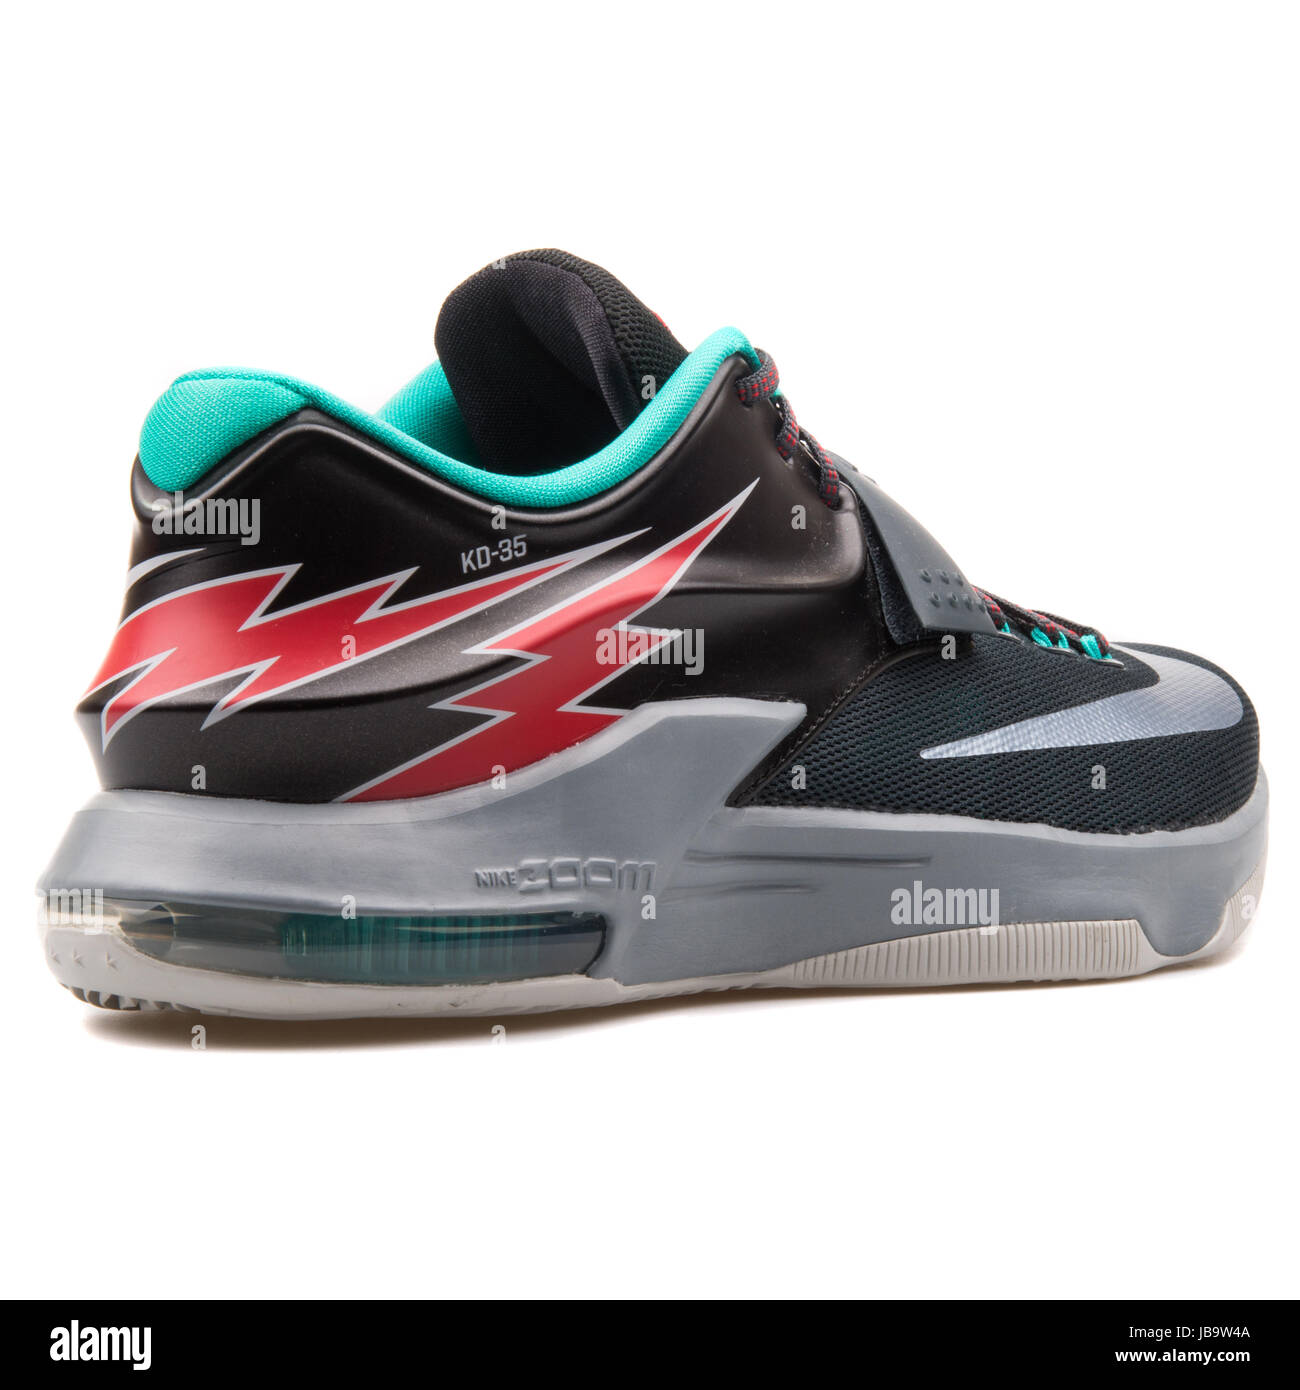 Nike KD VII schwarz, grau, grün und rot Herren Basketball-Schuhe - 653996-005 Stockfoto